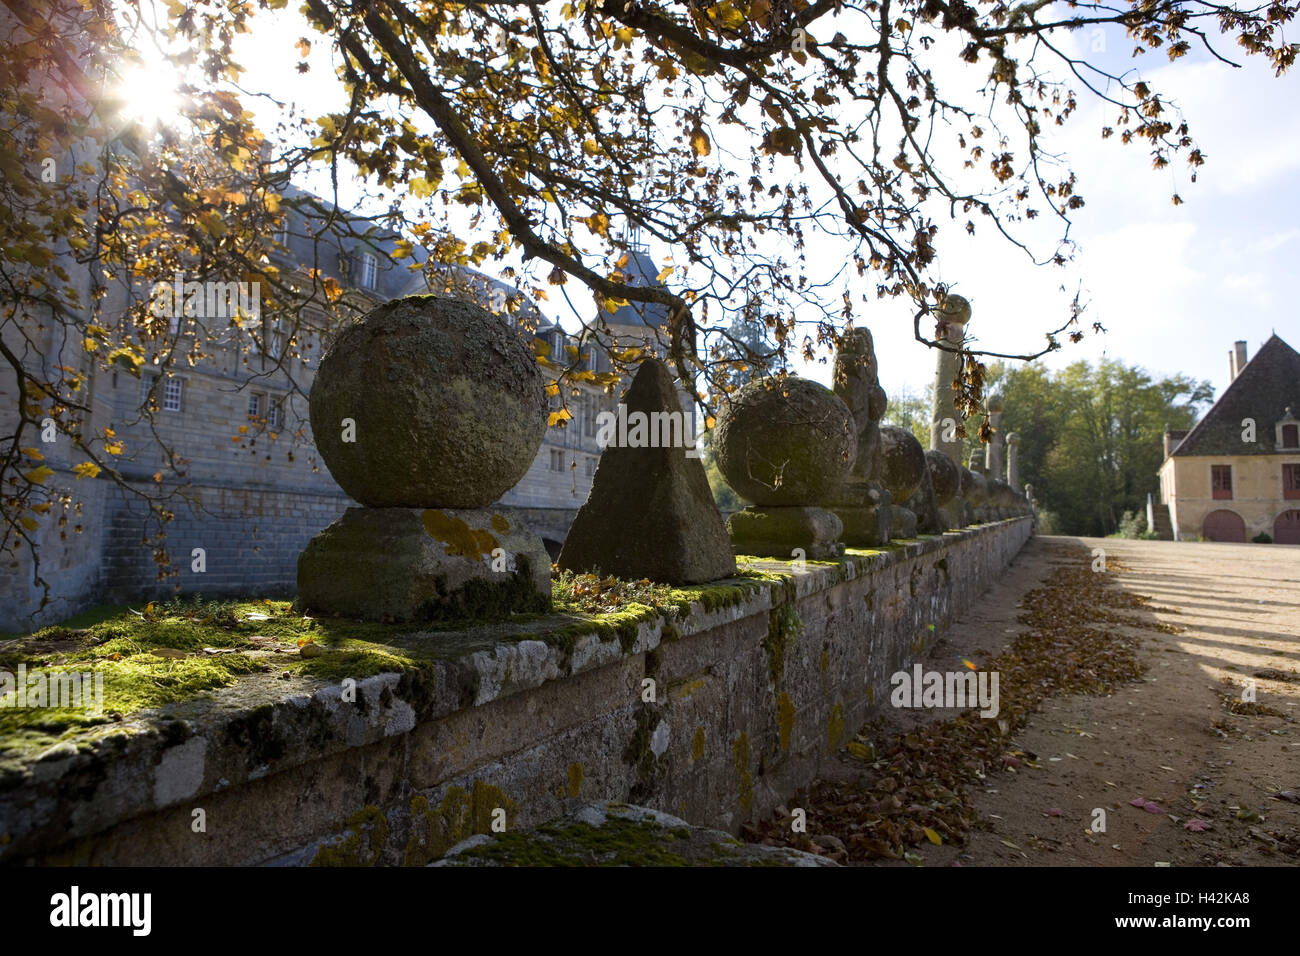 France, Burgundy, Saône-et-Loire, Chateau de Sully, castle defensive wall, detail, autumn mood, Stock Photo